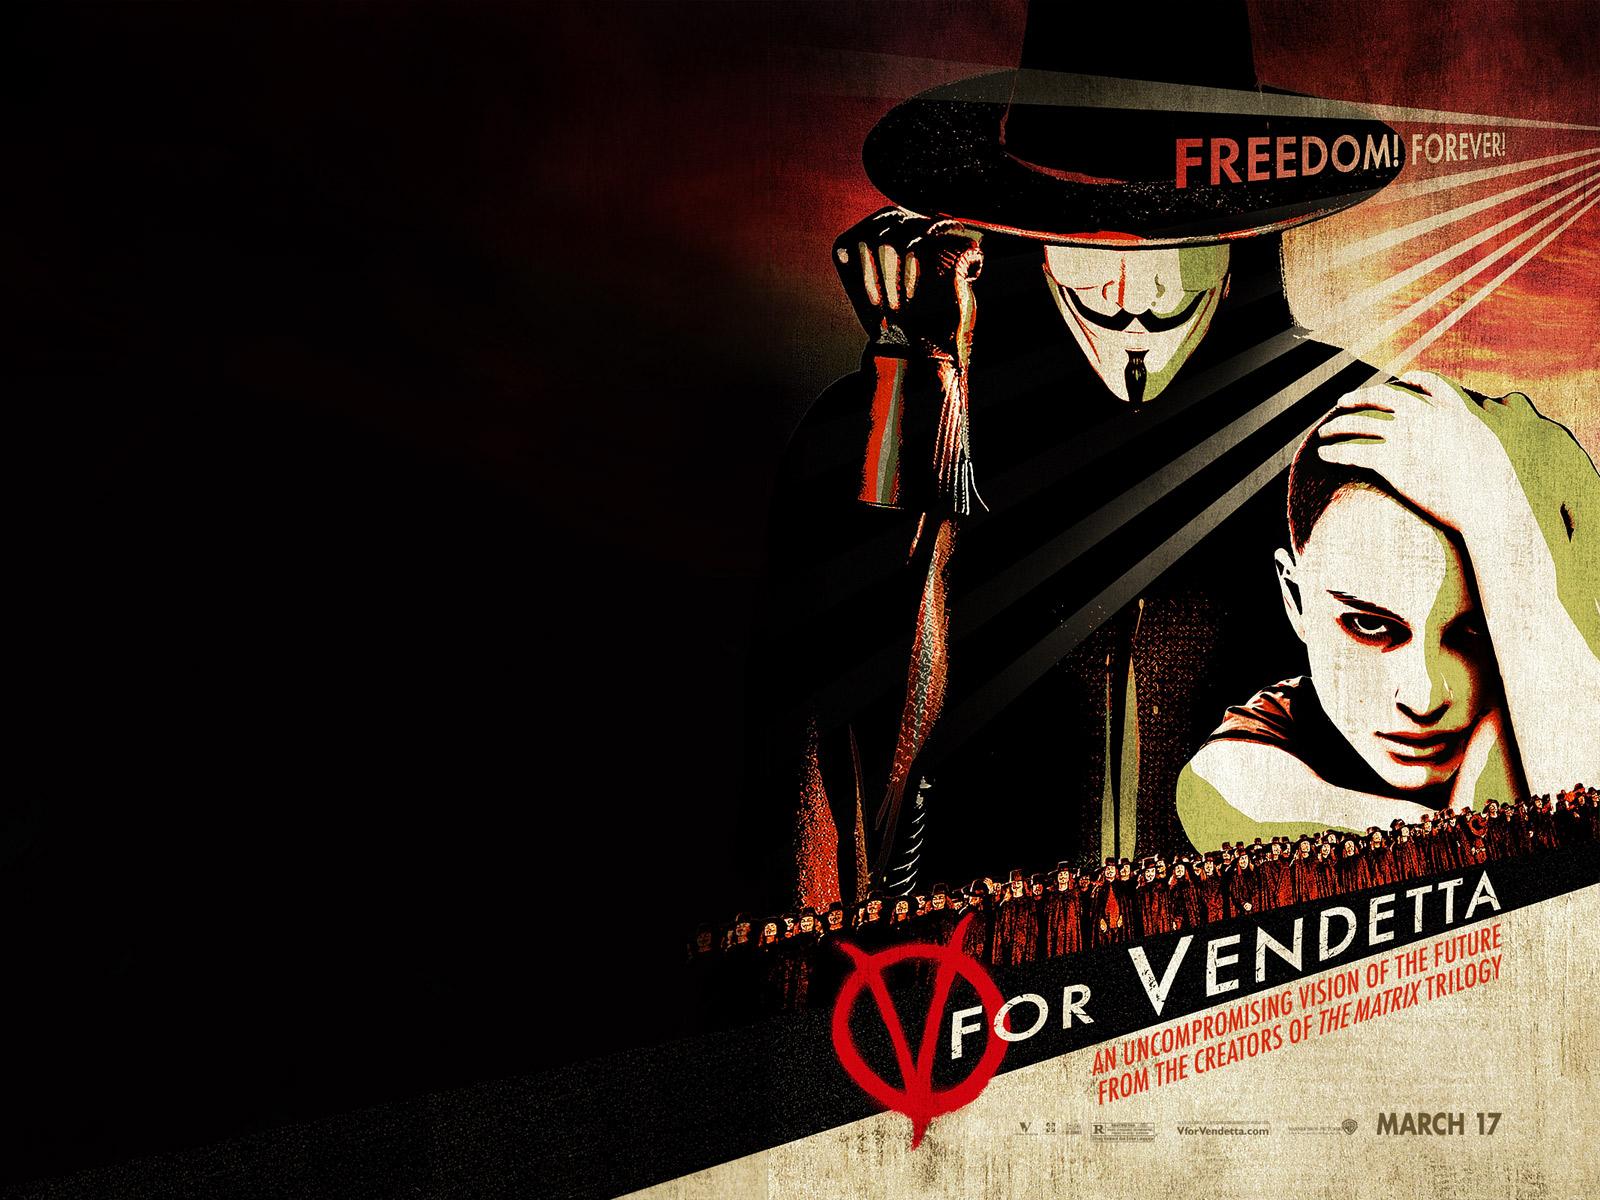 Wallpaper V pour Vendetta - V for Vendetta Natalie Portman & Hugo Weaving